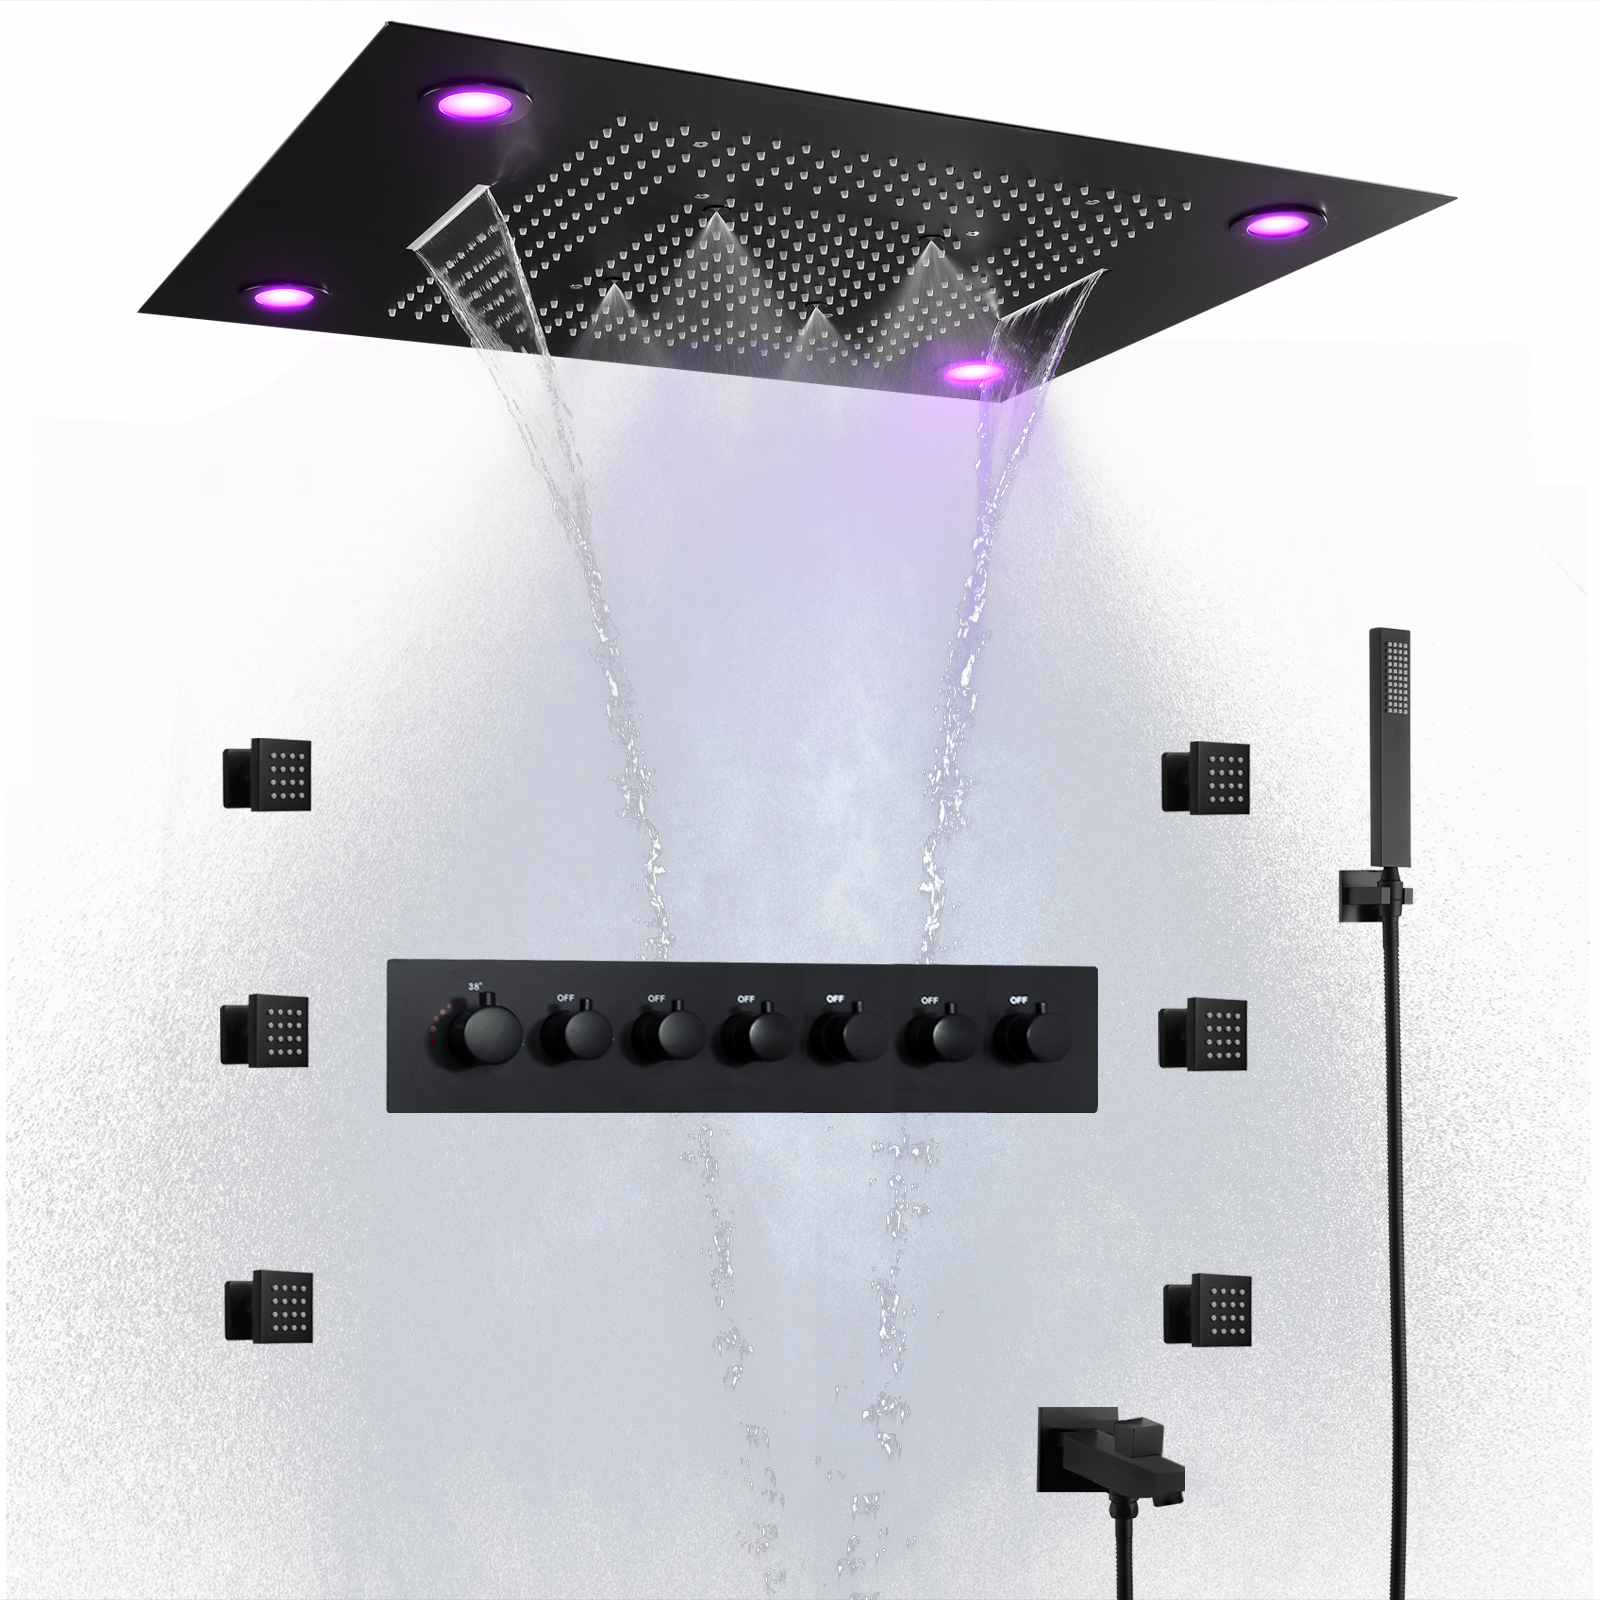 Cabeça de chuveiro preta 800*600MM LED Sistema de chuveiro multifuncional termostático para banheiro com jatos corporais de chuveiro